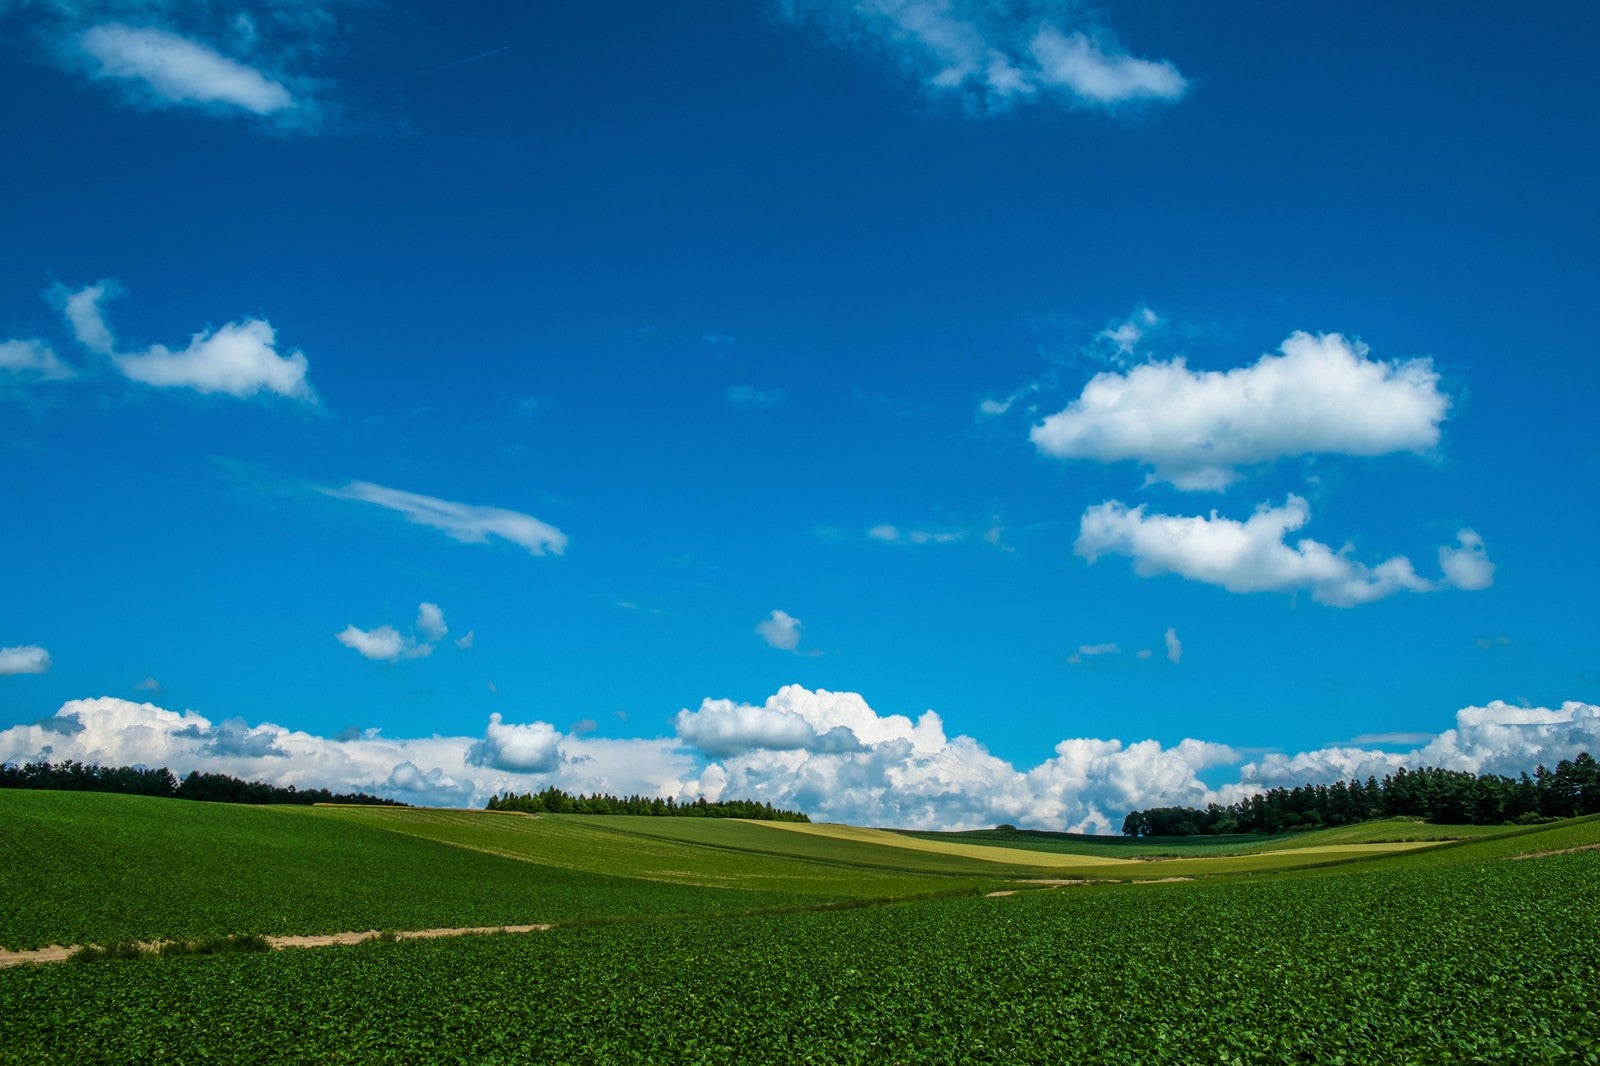 「広大な農場と青空」の写真